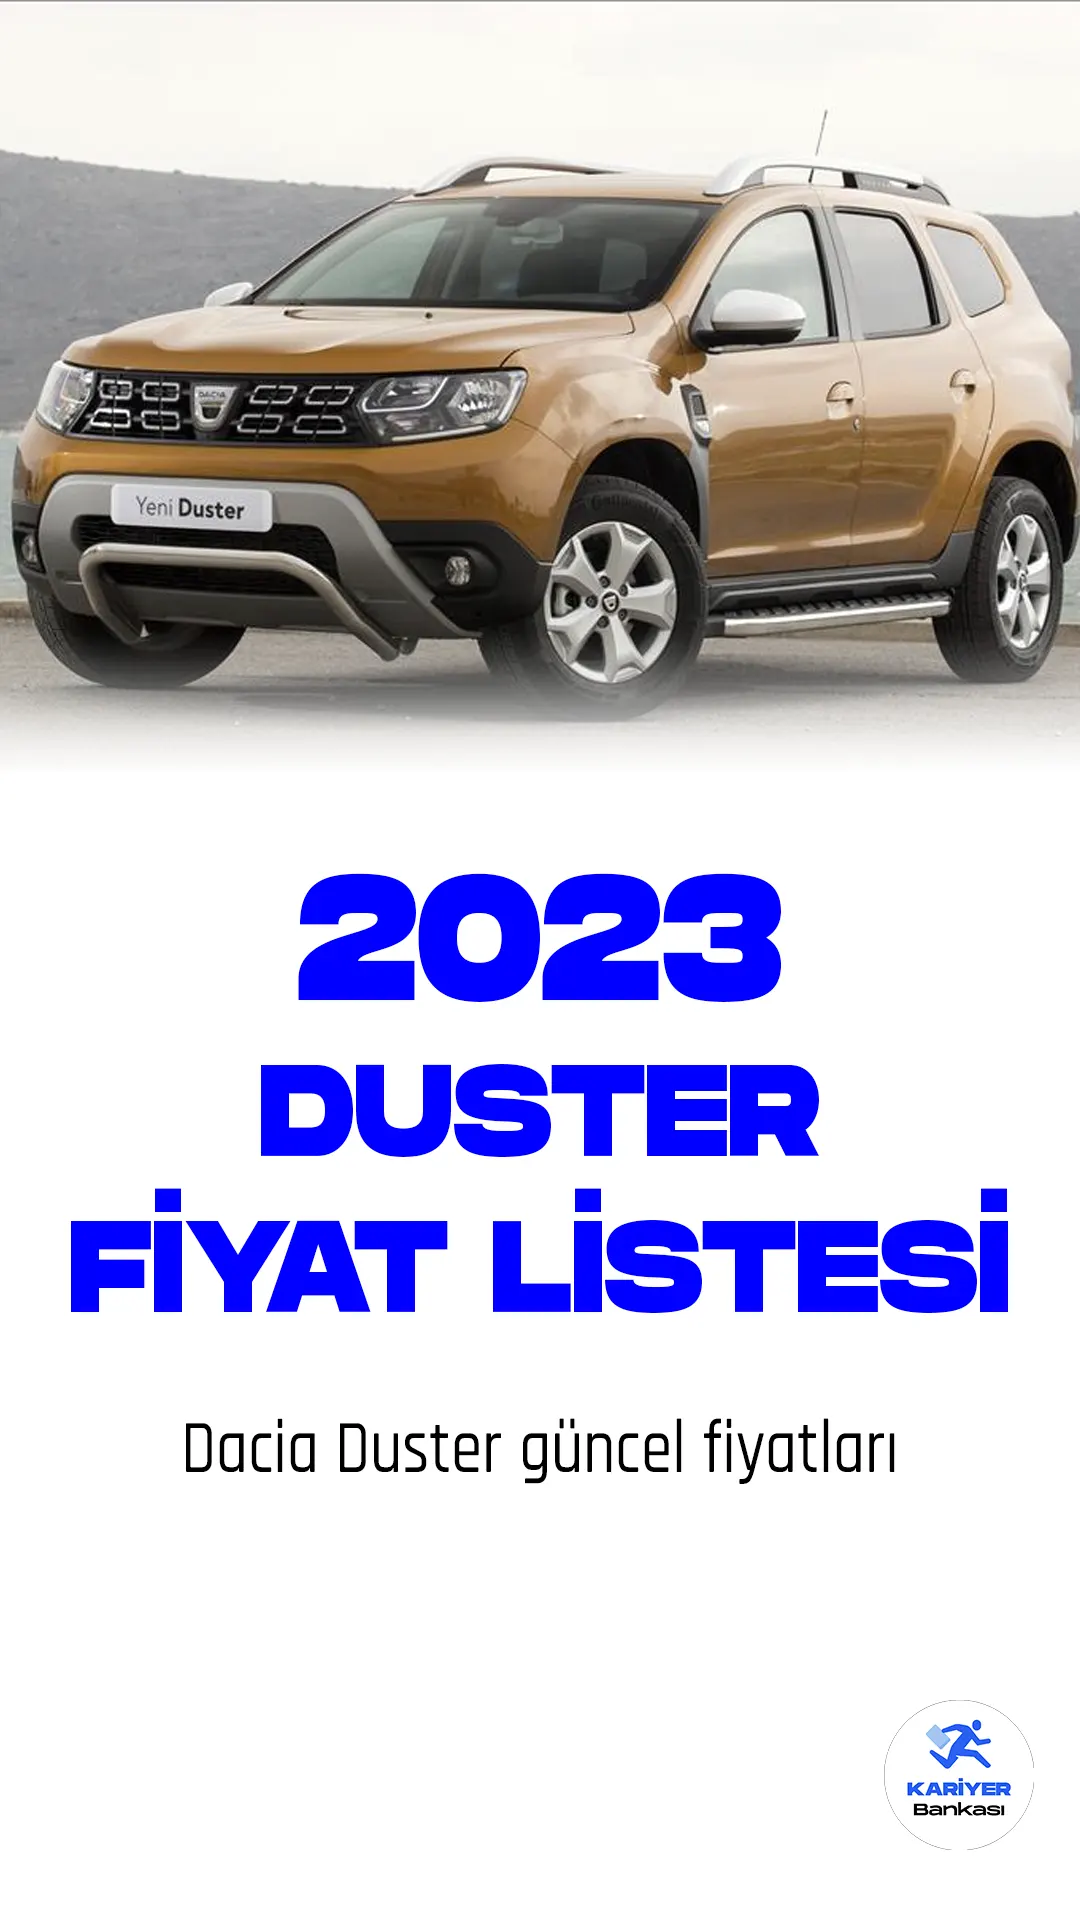 Dacia Duster fiyat listesi yayımlandı! Dacia, Türkiye'nin de dahil olduğu birçok ülkede popülerlik kazanan Duster modeli için yenilikler sunmaya devam ediyor. 2023 model yılı için yapılan güncellemeler ile Duster daha çekici bir görünüme kavuştu. Yenilenen ön tasarımı, agresif bir görünüme sahip farları ve yeni bir ızgara tasarımıyla dikkat çekiyor. Yeni teknolojik özellikler arasında akıllı telefon entegrasyonu, geri görüş kamerası ve navigasyon sistemi bulunuyor. Ayrıca, güvenlik özellikleri arasına eklenen arka park sensörleri ve çekiş kontrolü, sürücüleri daha güvende tutuyor. Dacia Duster, uygun fiyatı, düşük yakıt tüketimi ve geniş iç hacmi ile kullanıcıların beklentilerini karşılamaya devam ediyor.